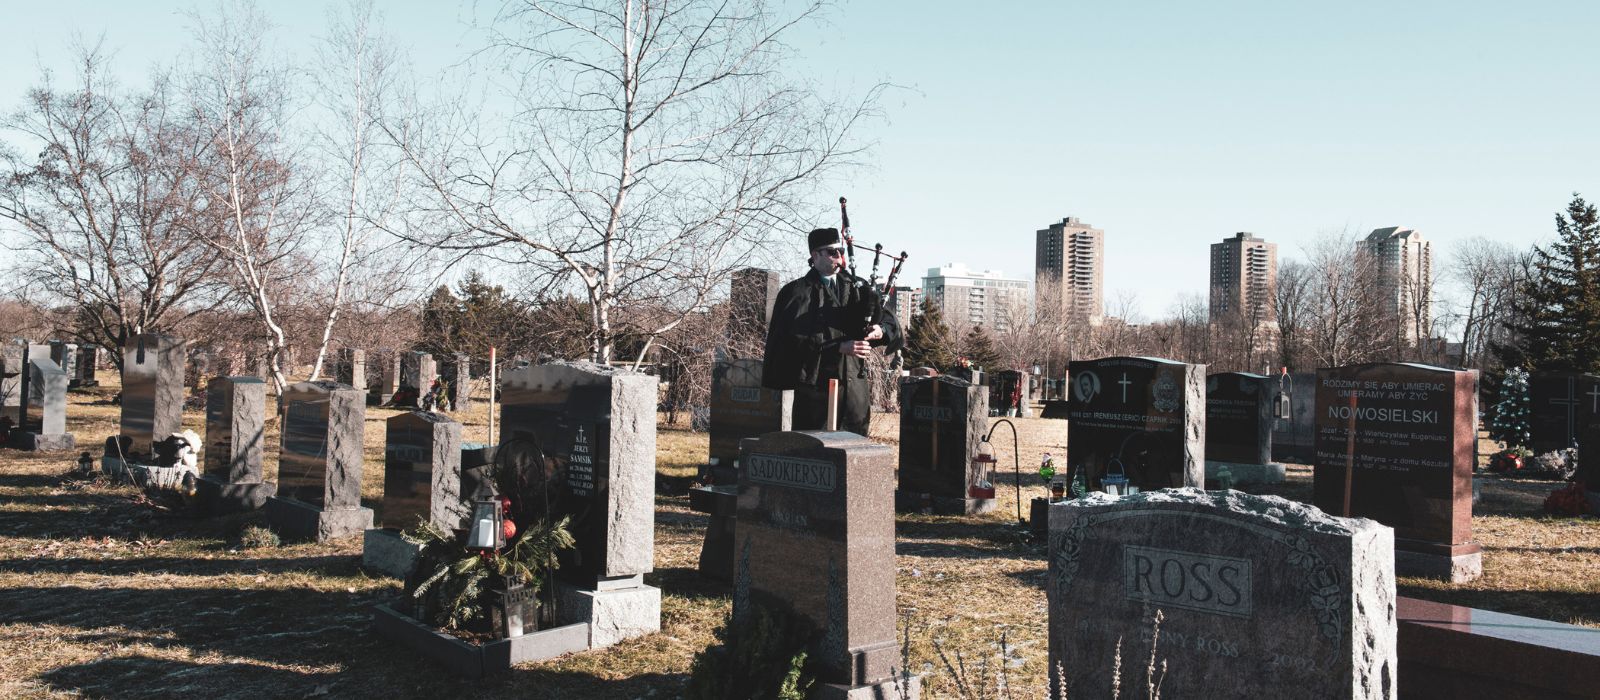 Un membre du pipe band de la police d'Ottawa jouant de la cornemuse dans un cimetière.